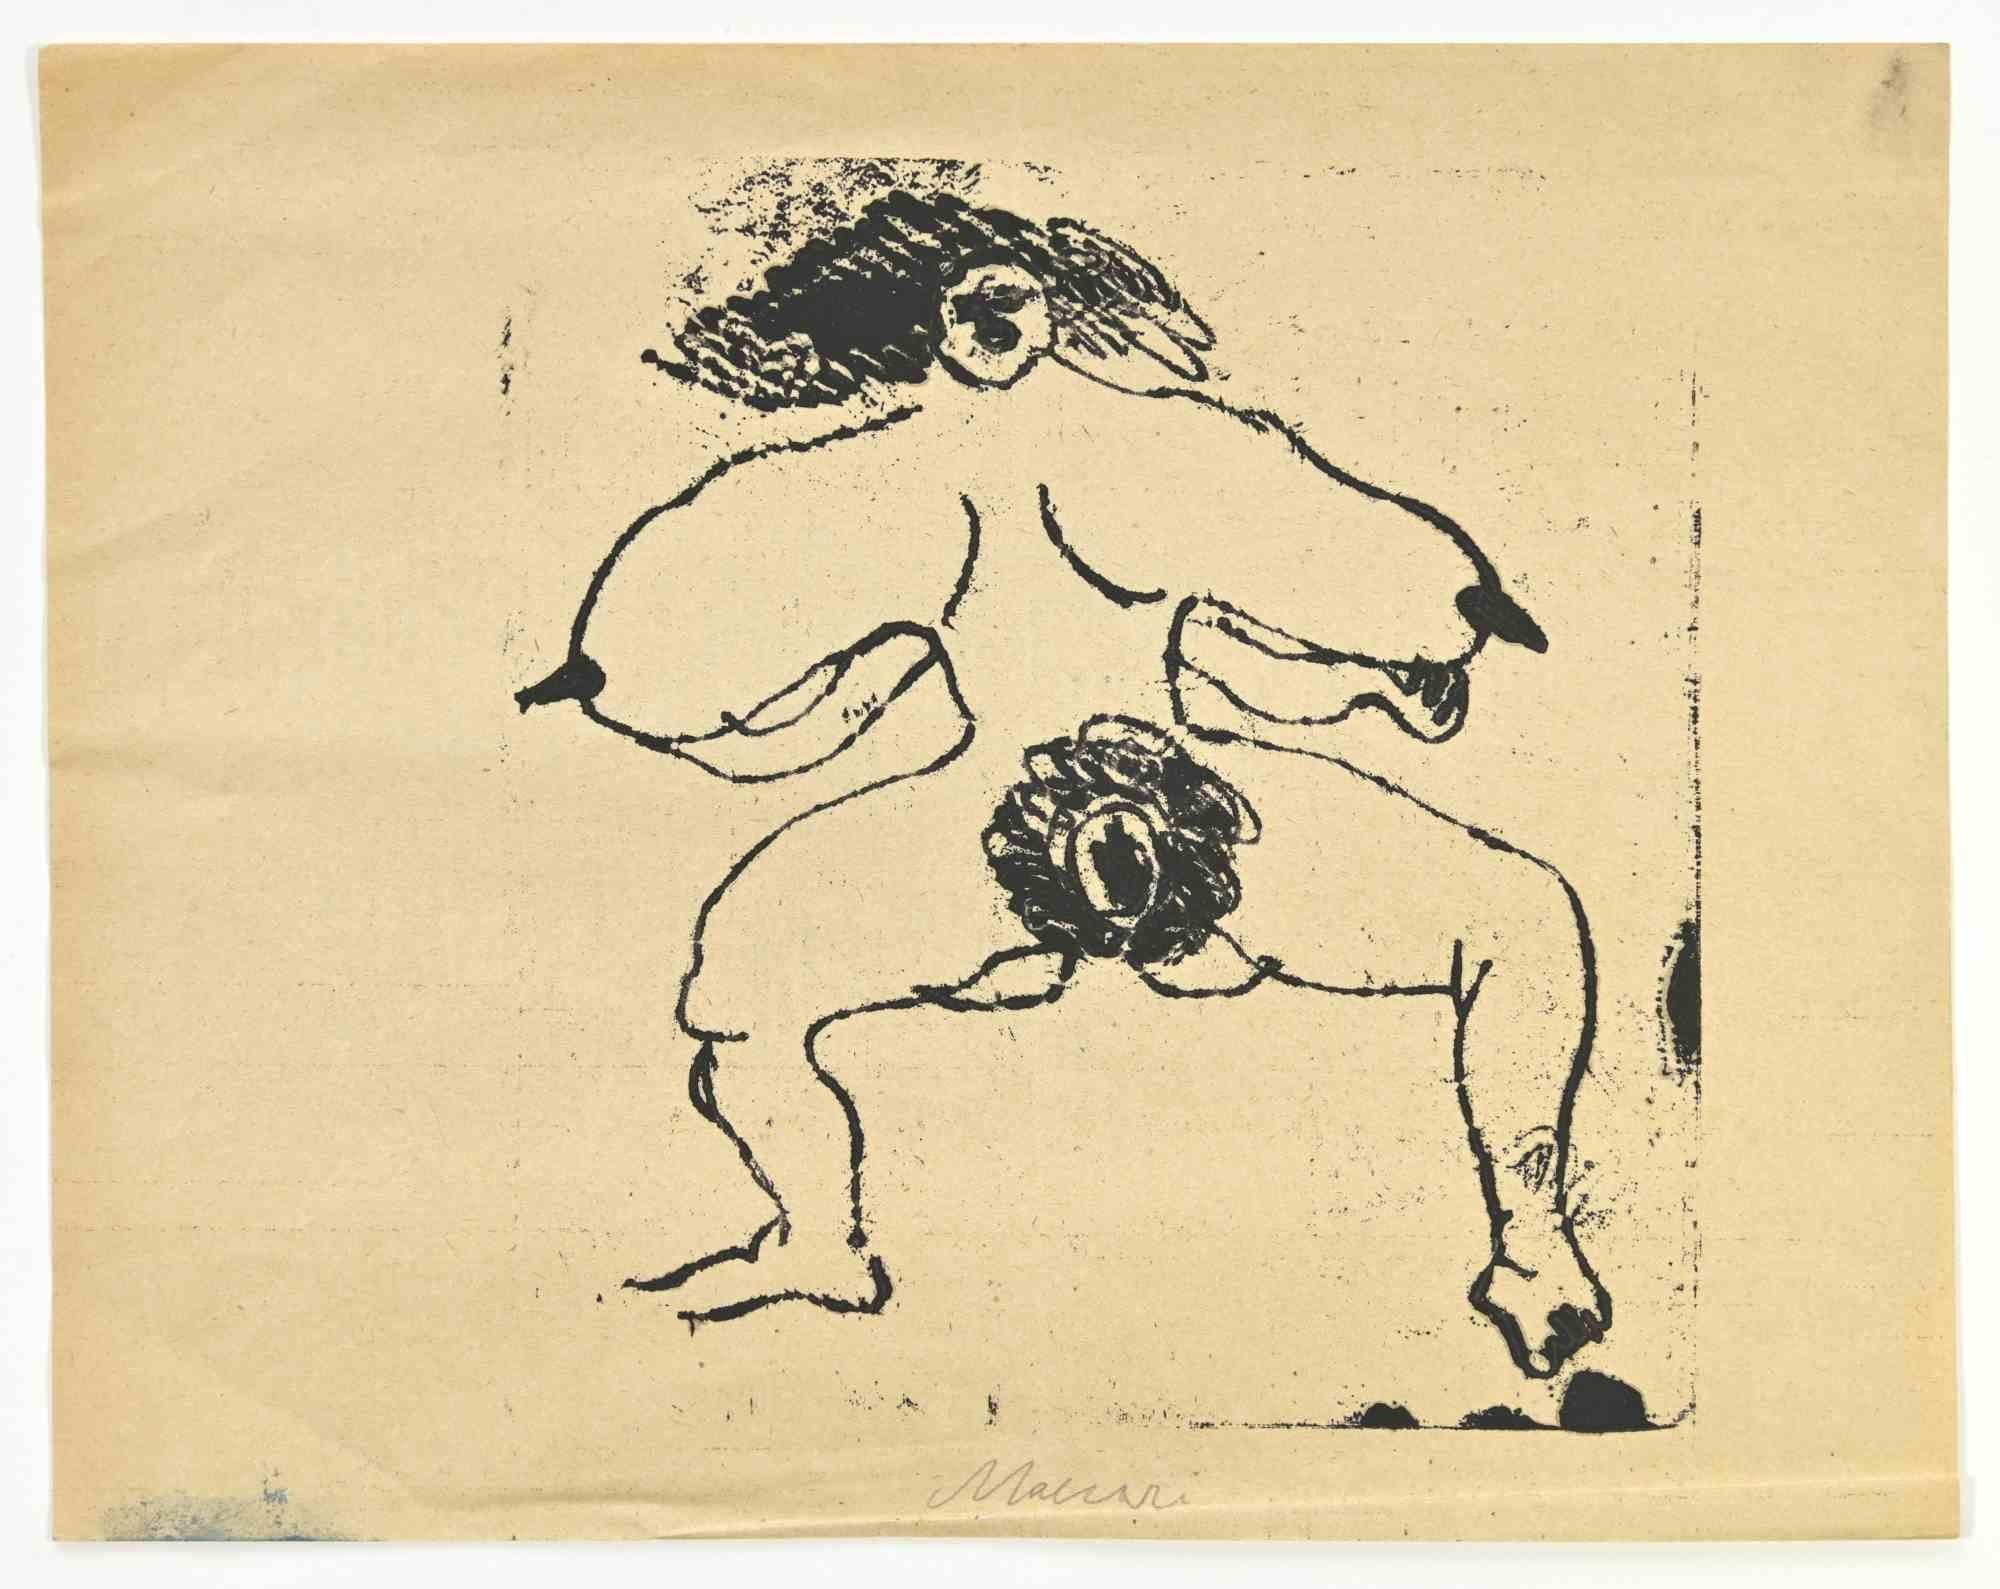 Nude ist ein Monotype-Kunstwerk von Mino Maccari  (1924-1989) in den 1950er Jahren.

Handsigniert auf der Unterseite.

Mino Maccari (Siena, 1924-Rom, 16. Juni 1989) war ein italienischer Schriftsteller, Maler, Graveur und Journalist, der 1963 mit